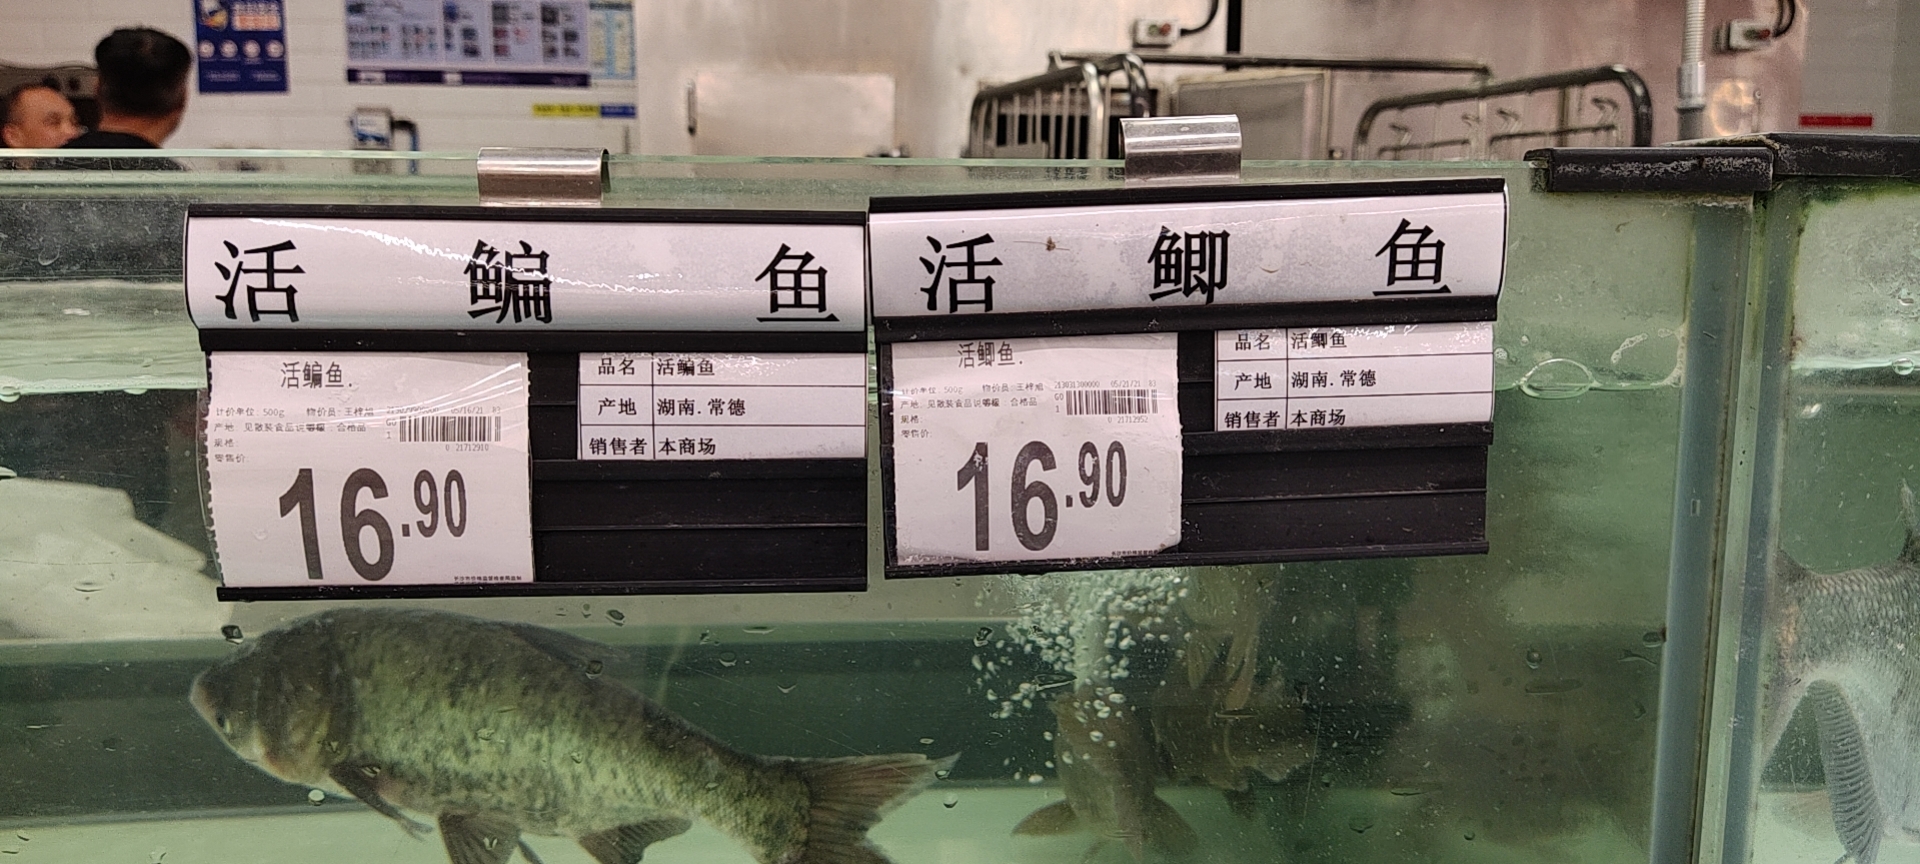 精彩生活、步步高、沃尔玛等大型超市内，原本市场价在个位数的淡水鱼集体“破十”。